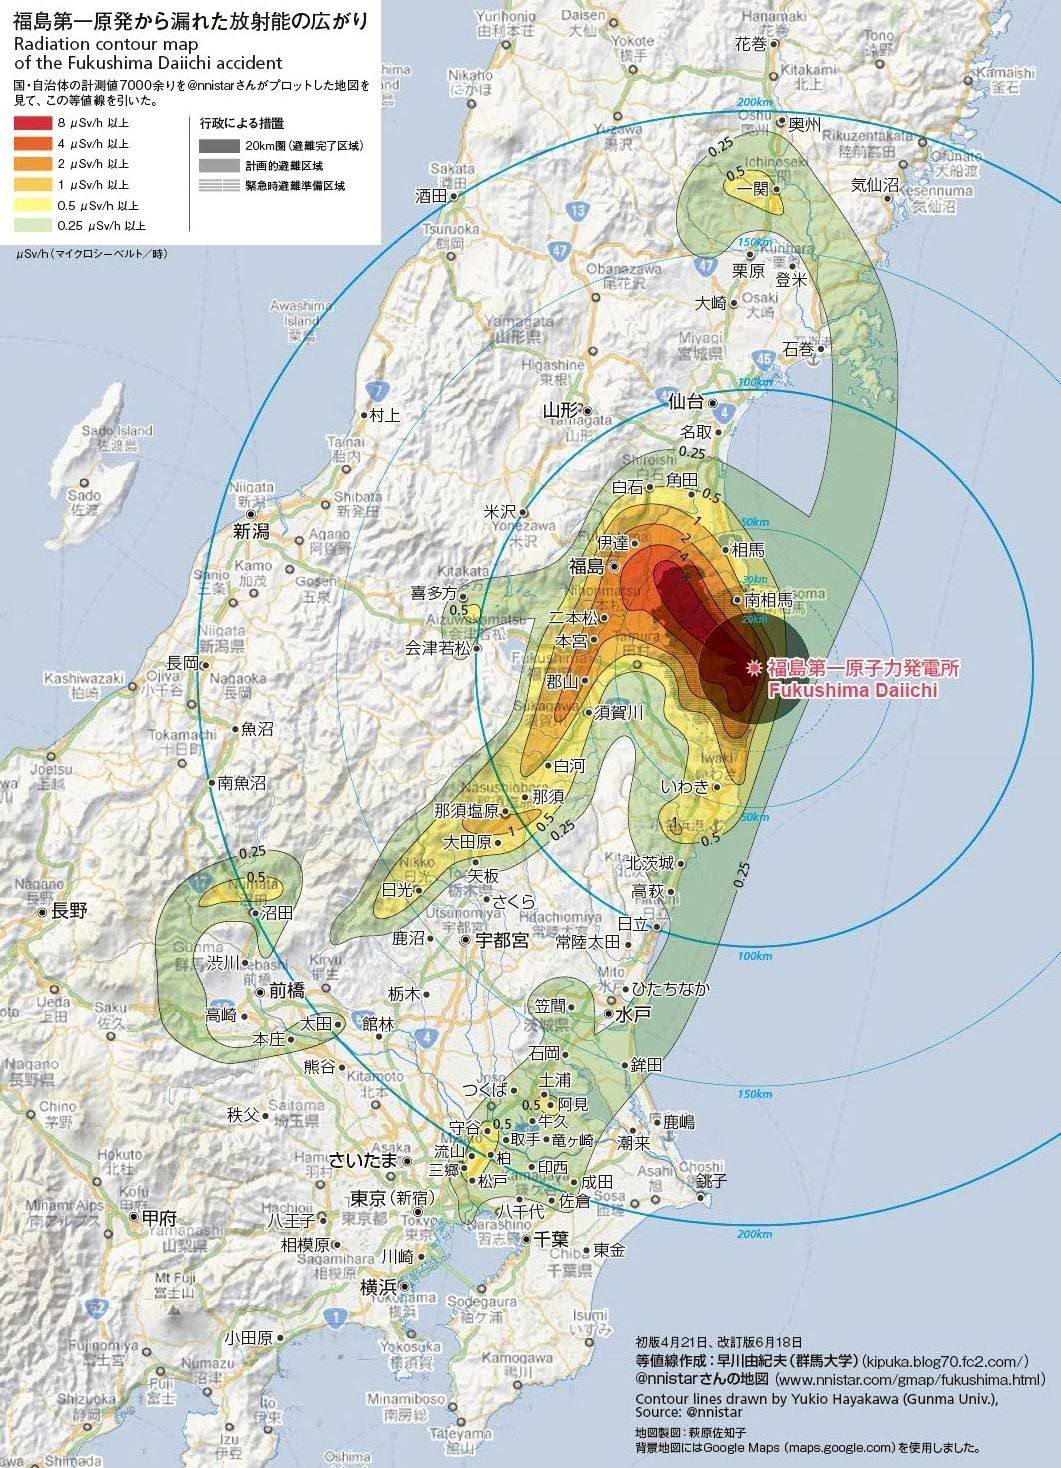 実態がわかってきた関東平野の放射能汚染各地で空間放射線量の測定進む